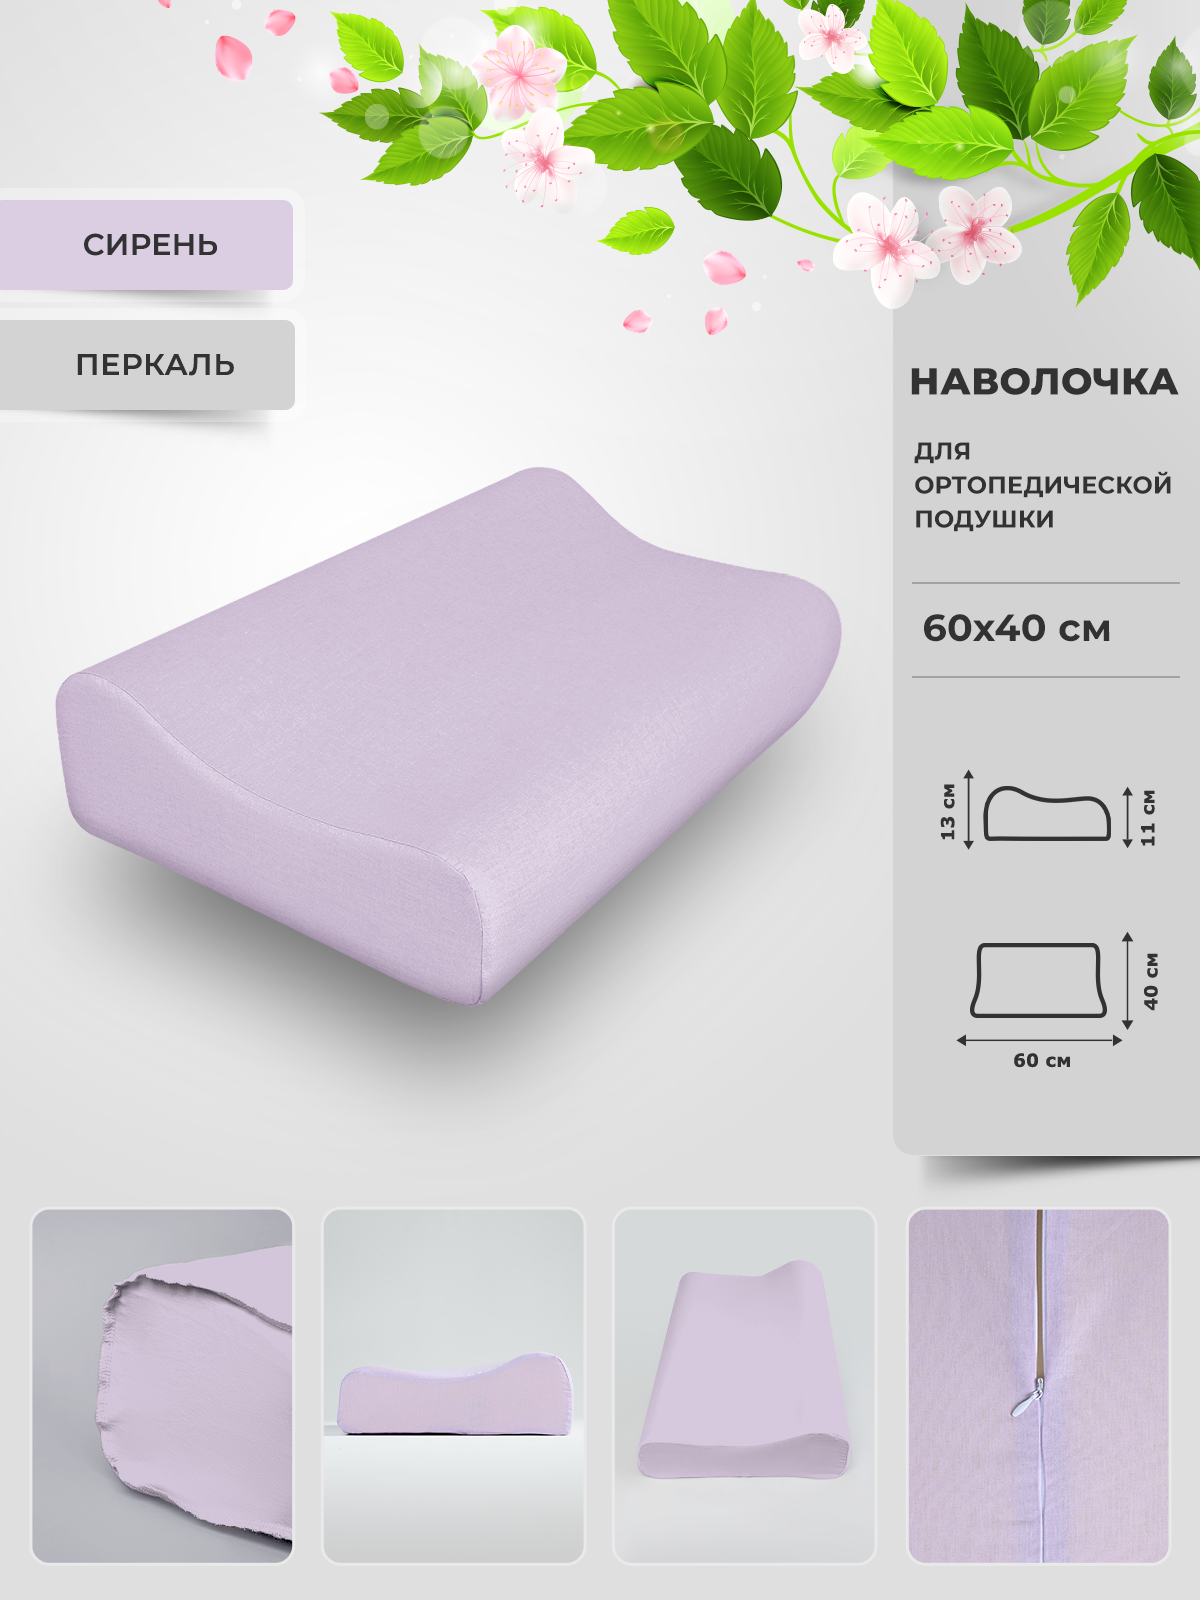 Наволочка Legpromtextile для ортопедической подушки 60х40 перкаль – купить в Москве, цены в интернет-магазинах на Мегамаркет